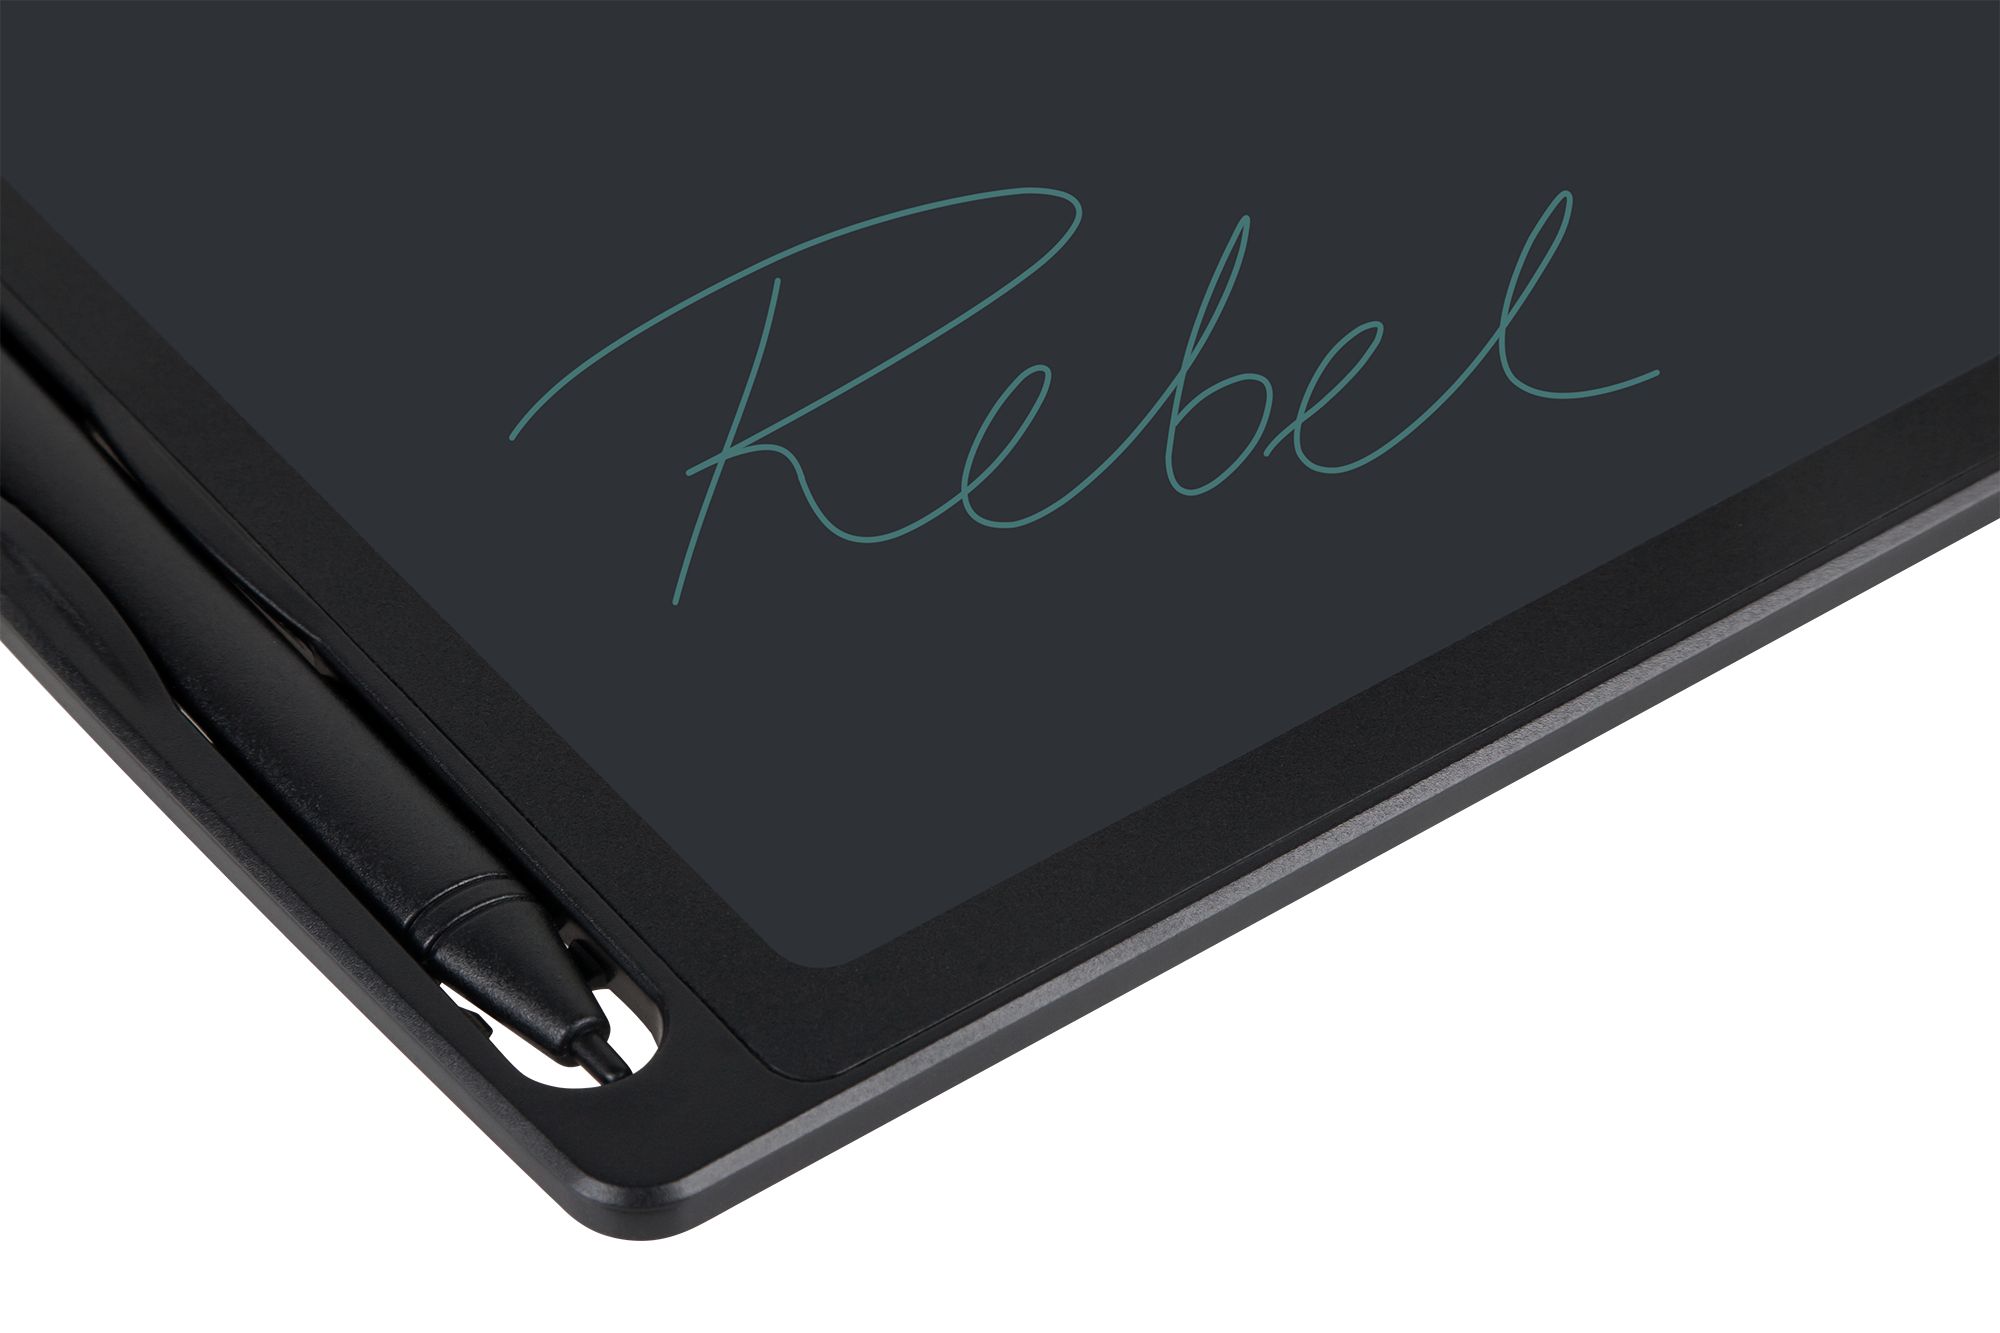 Elektroniczny notatnik, tablet graficzny do rysowania 8,5" Rebel